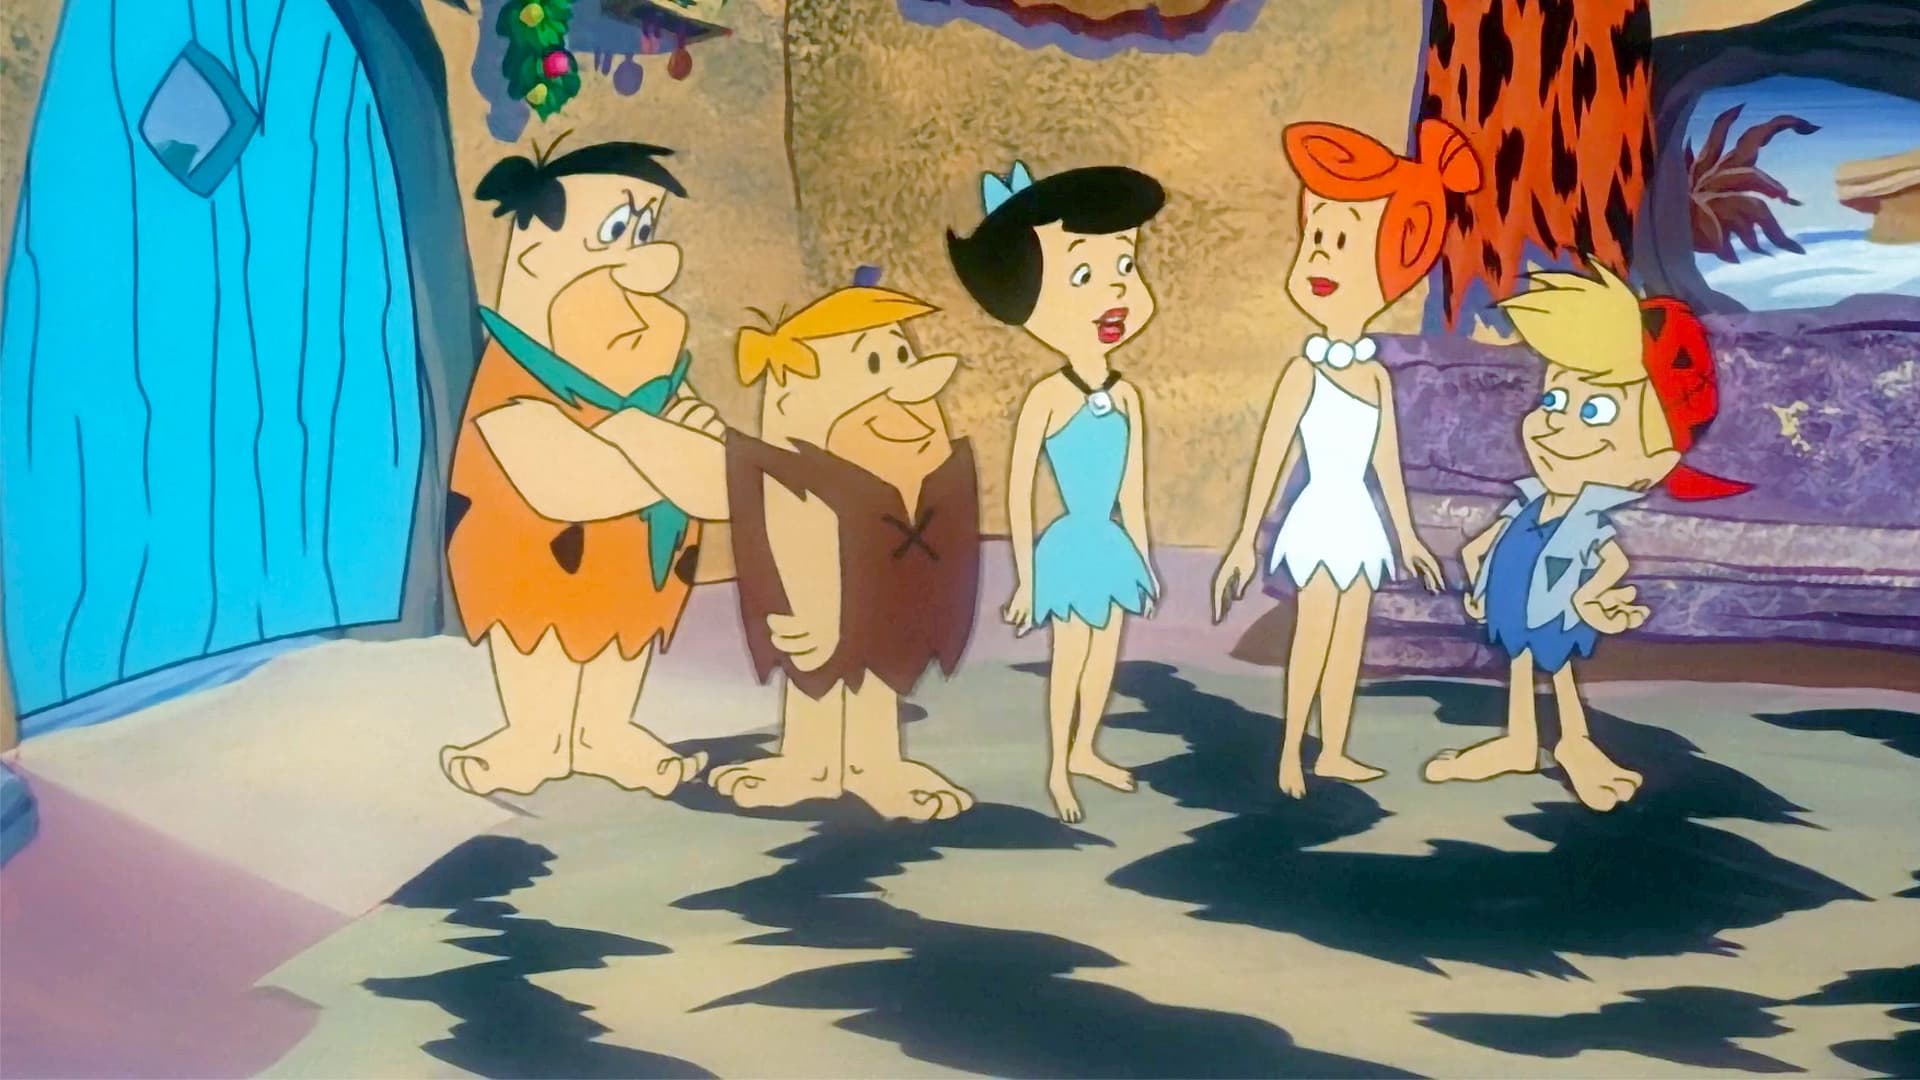 Un meraviglioso Natale con i Flintstones